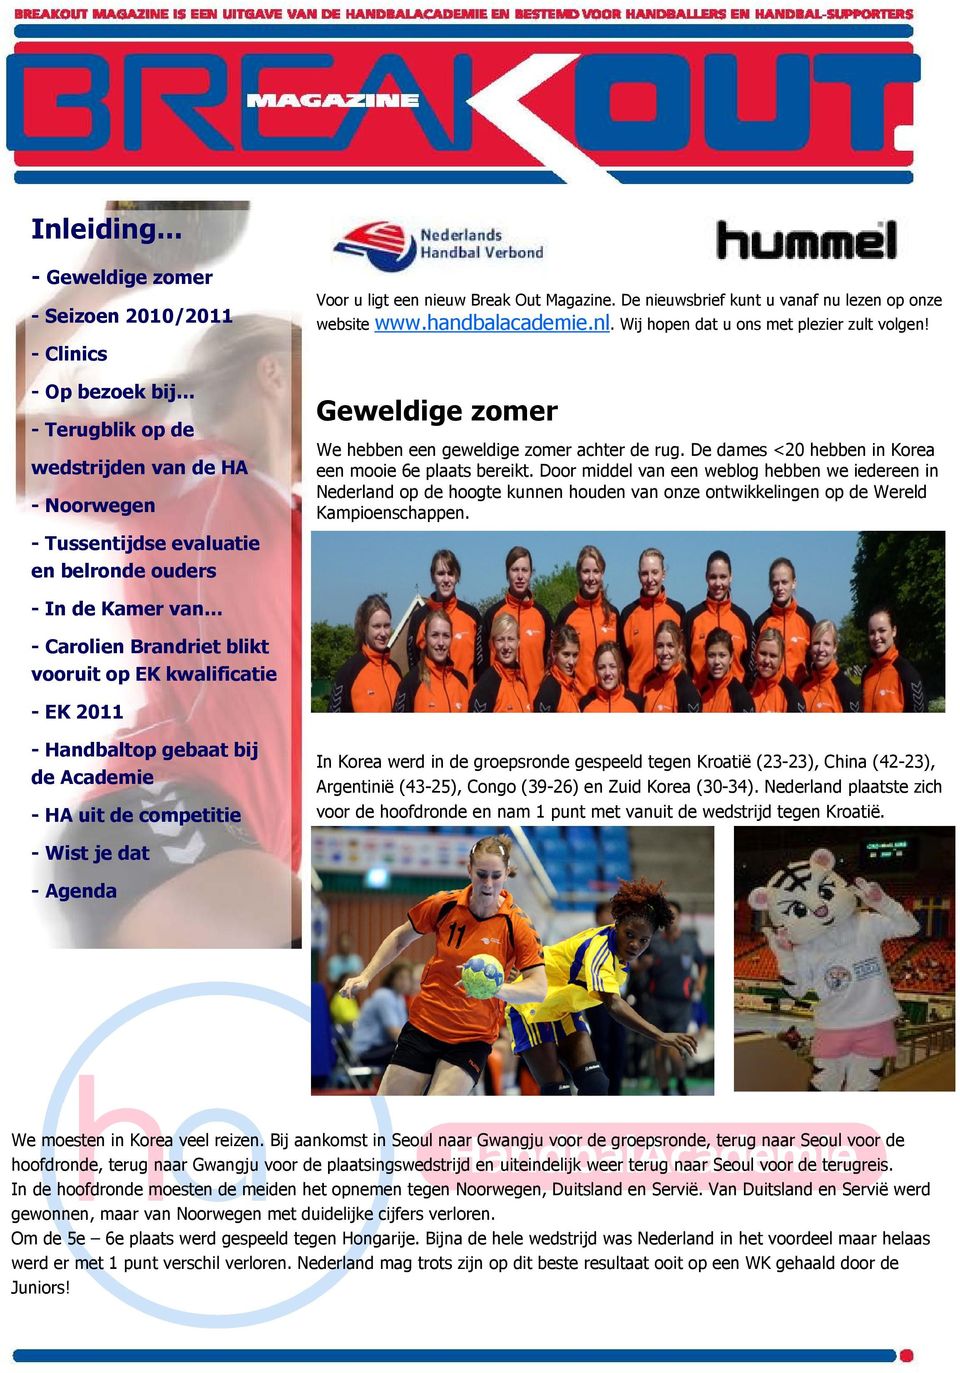 Magazine. De nieuwsbrief kunt u vanaf nu lezen op onze website www.handbalacademie.nl. Wij hopen dat u ons met plezier zult volgen! Geweldige zomer We hebben een geweldige zomer achter de rug.